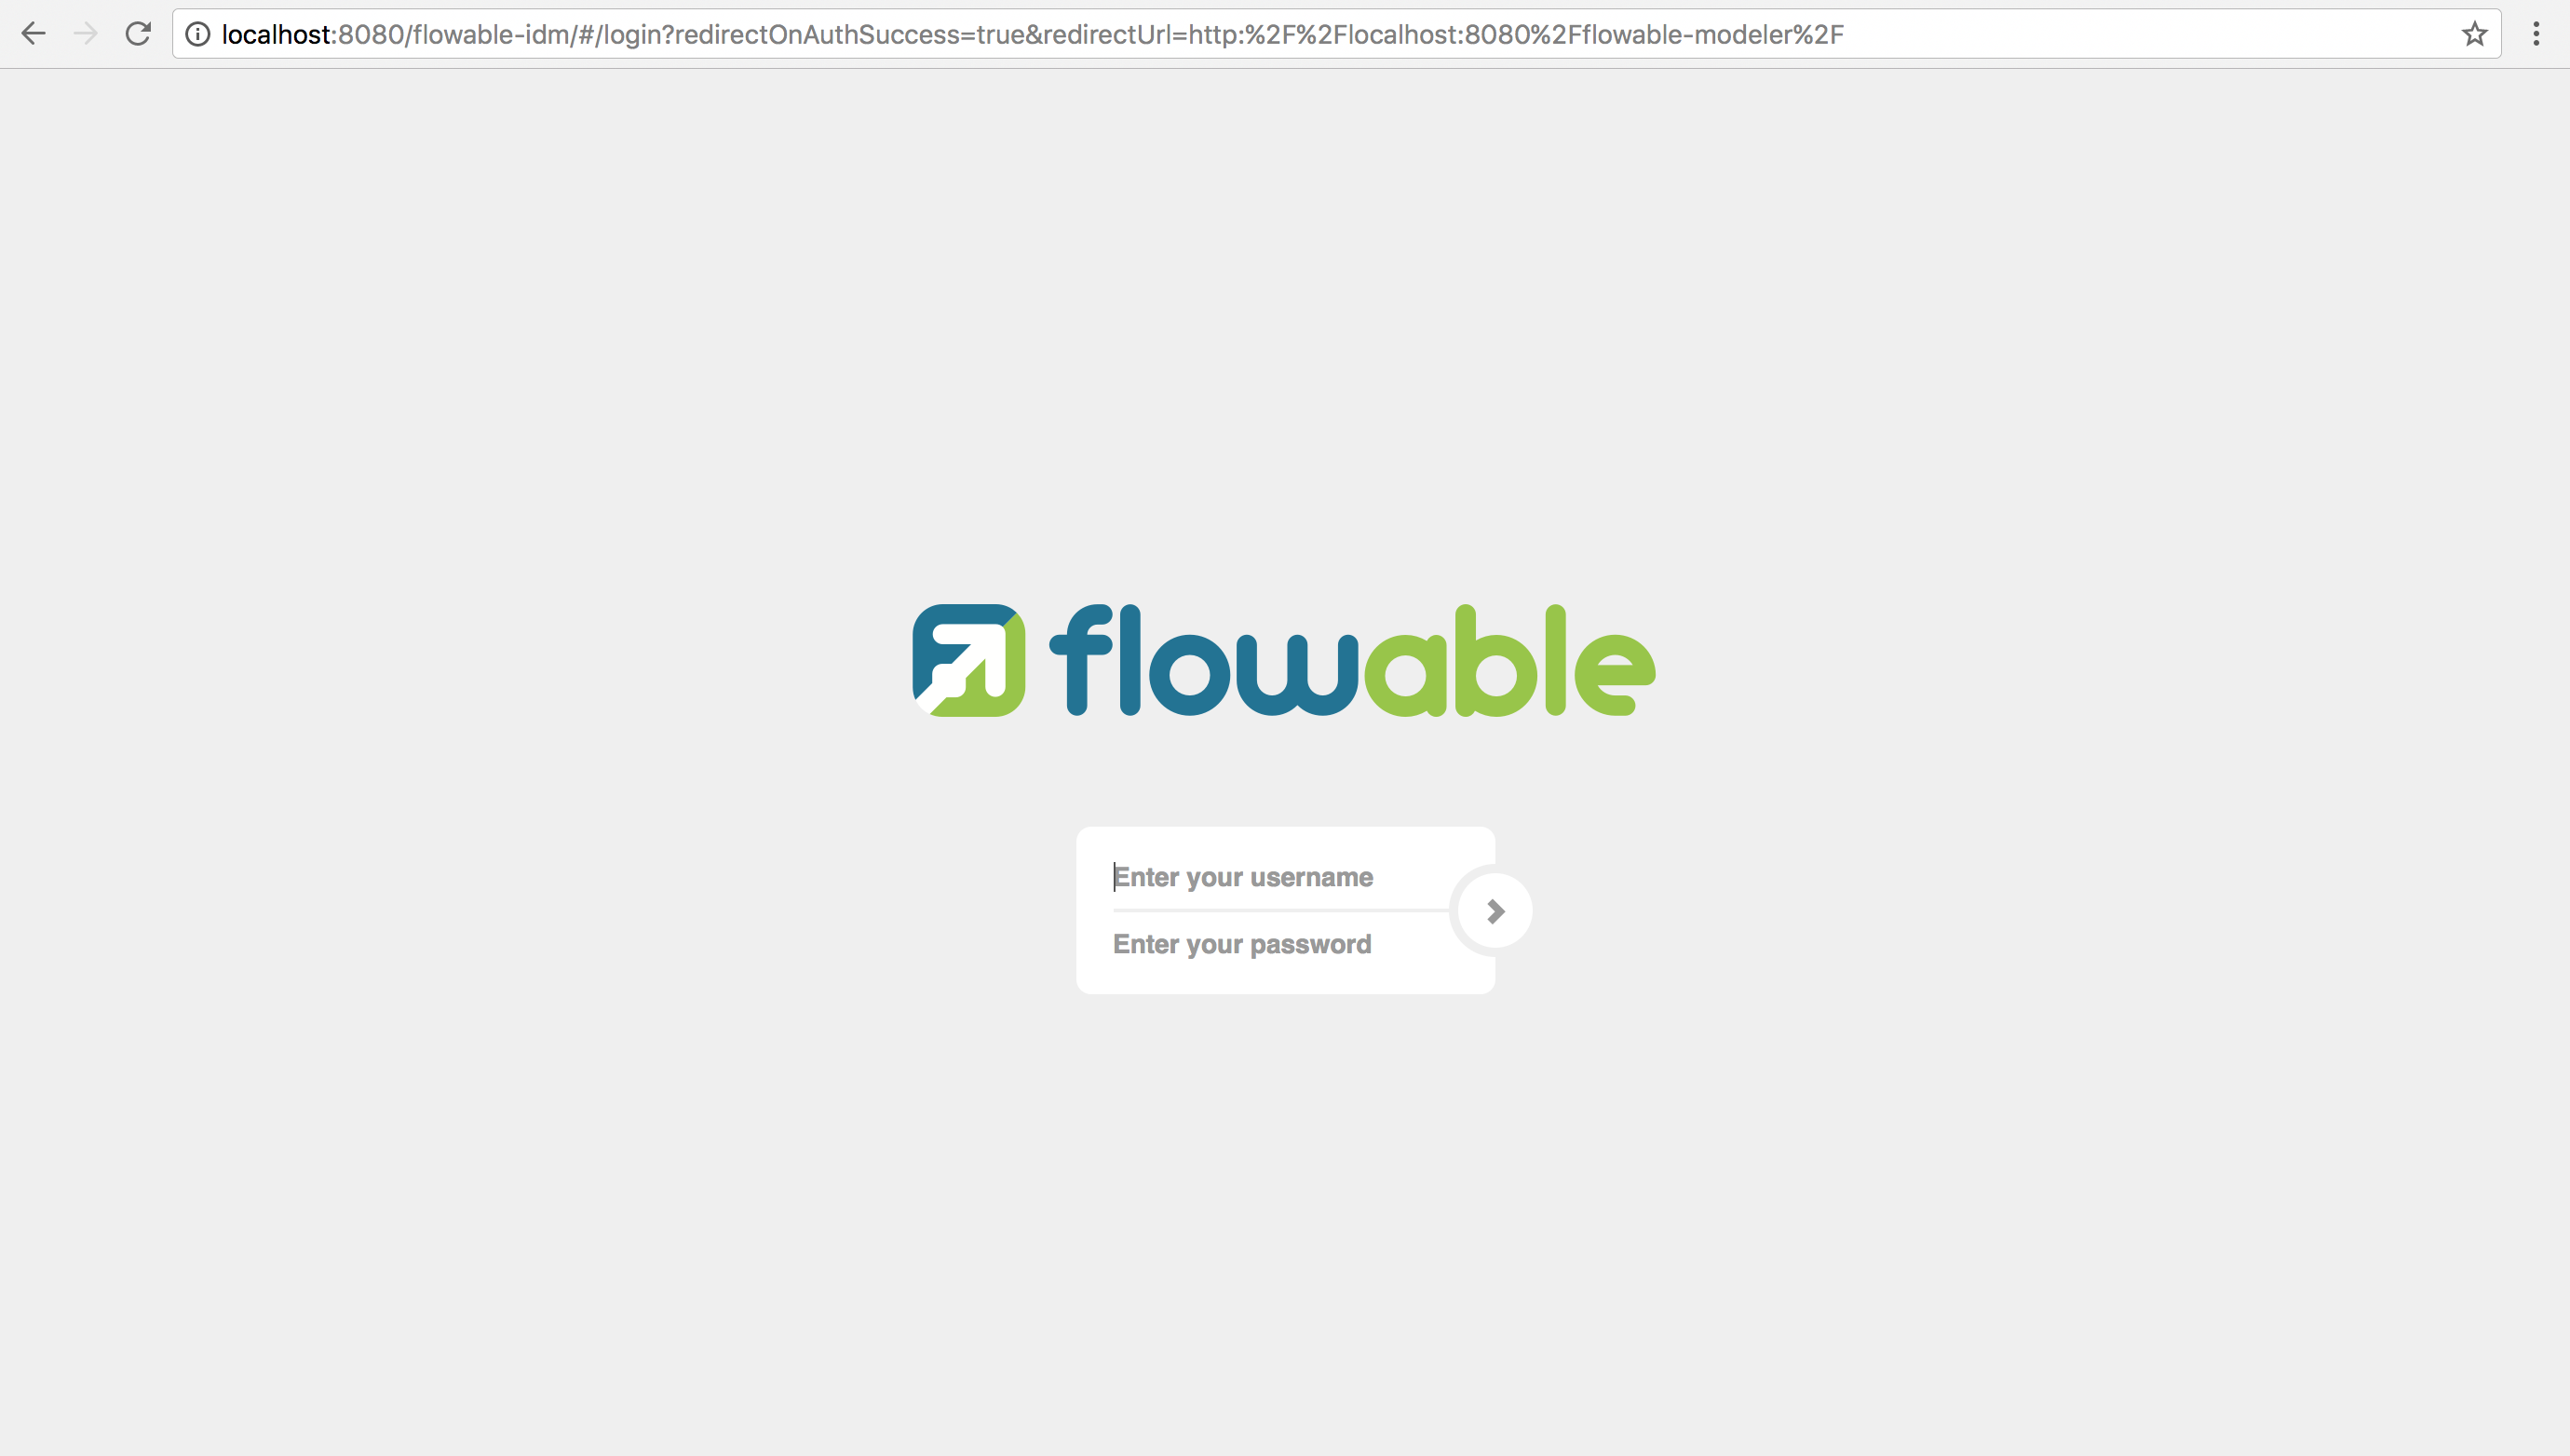 flowable idm login screen